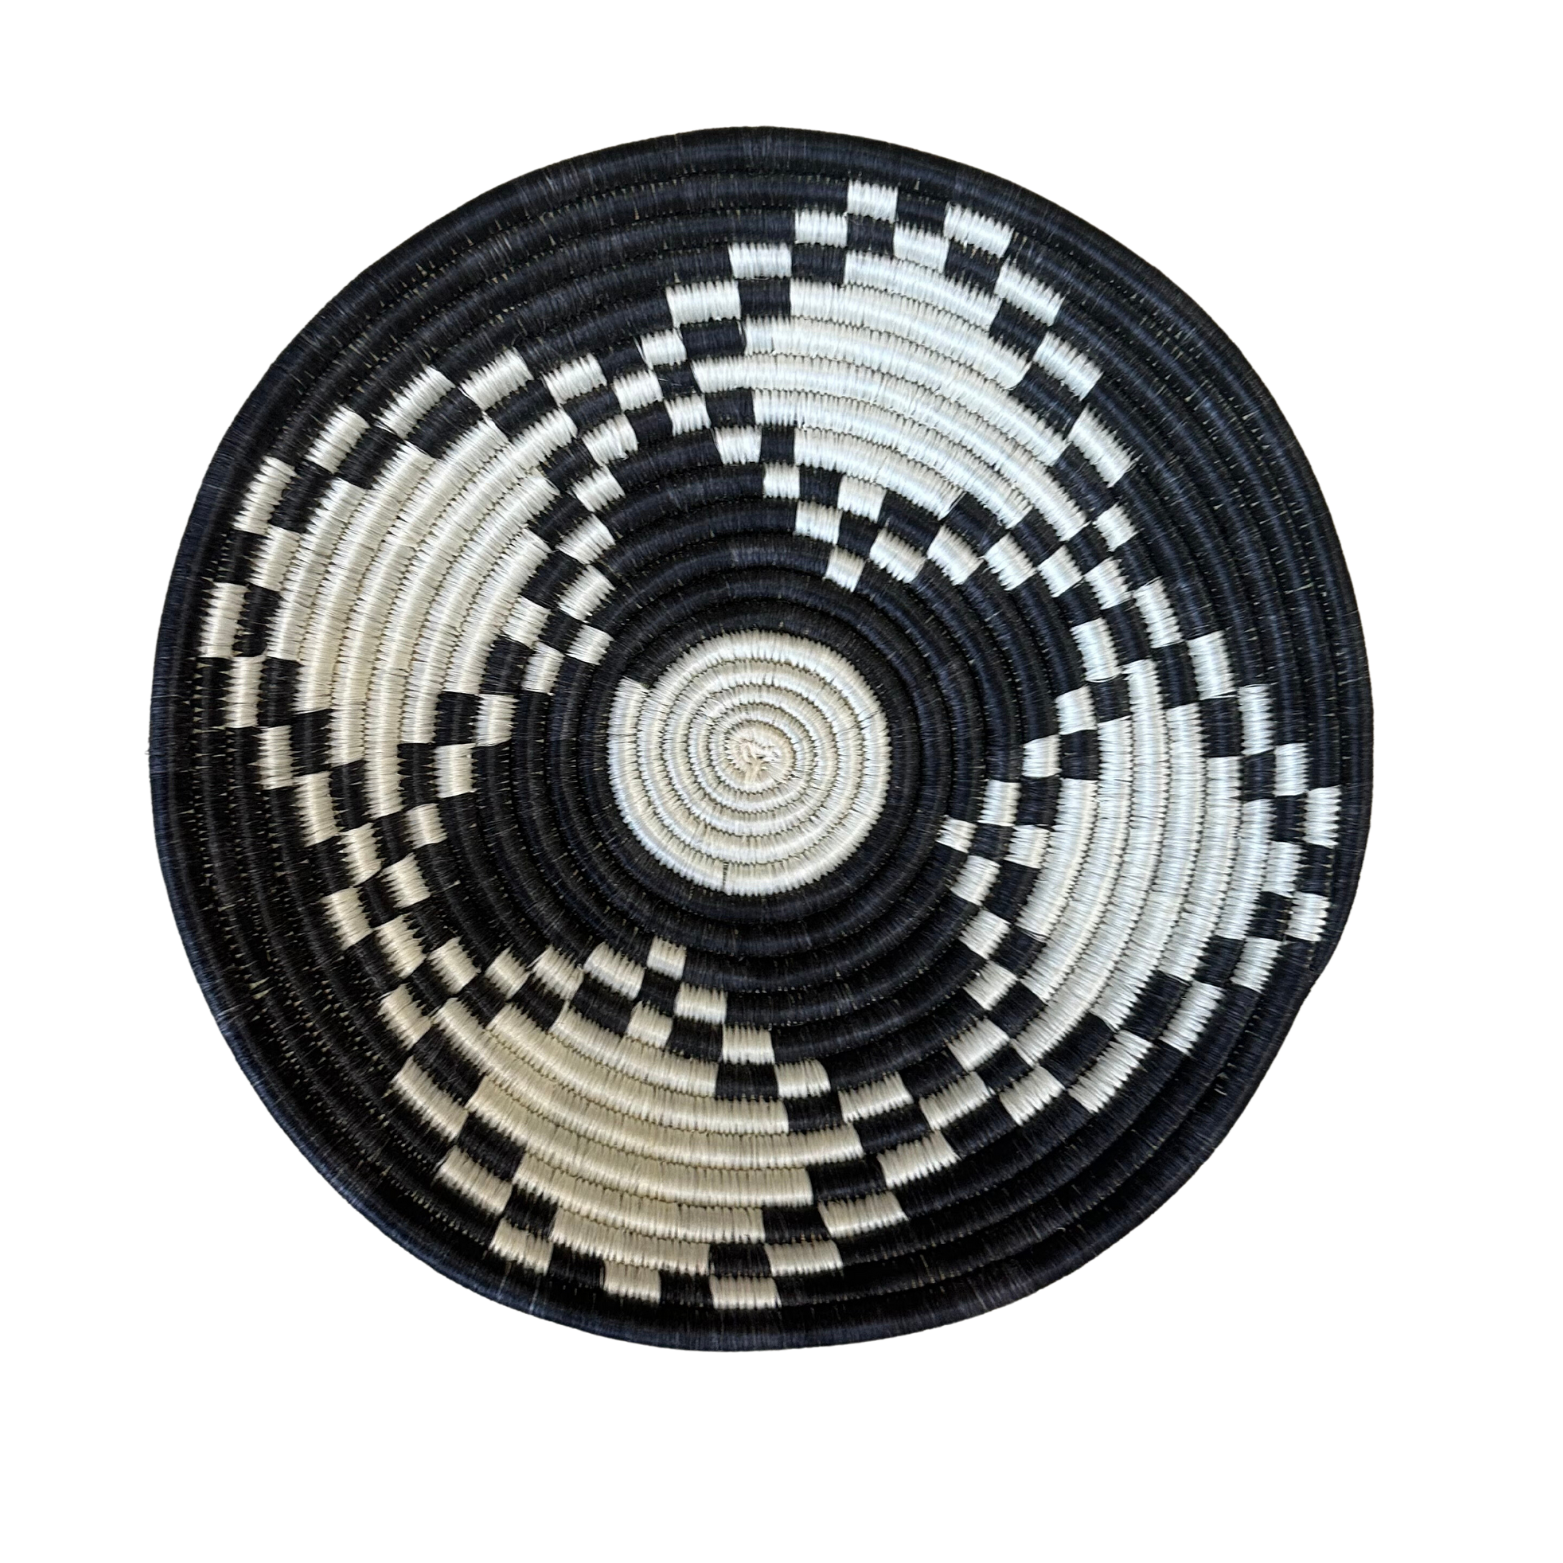 Large Handwoven Rwandan Basket - Black & White Patterns (28cm)